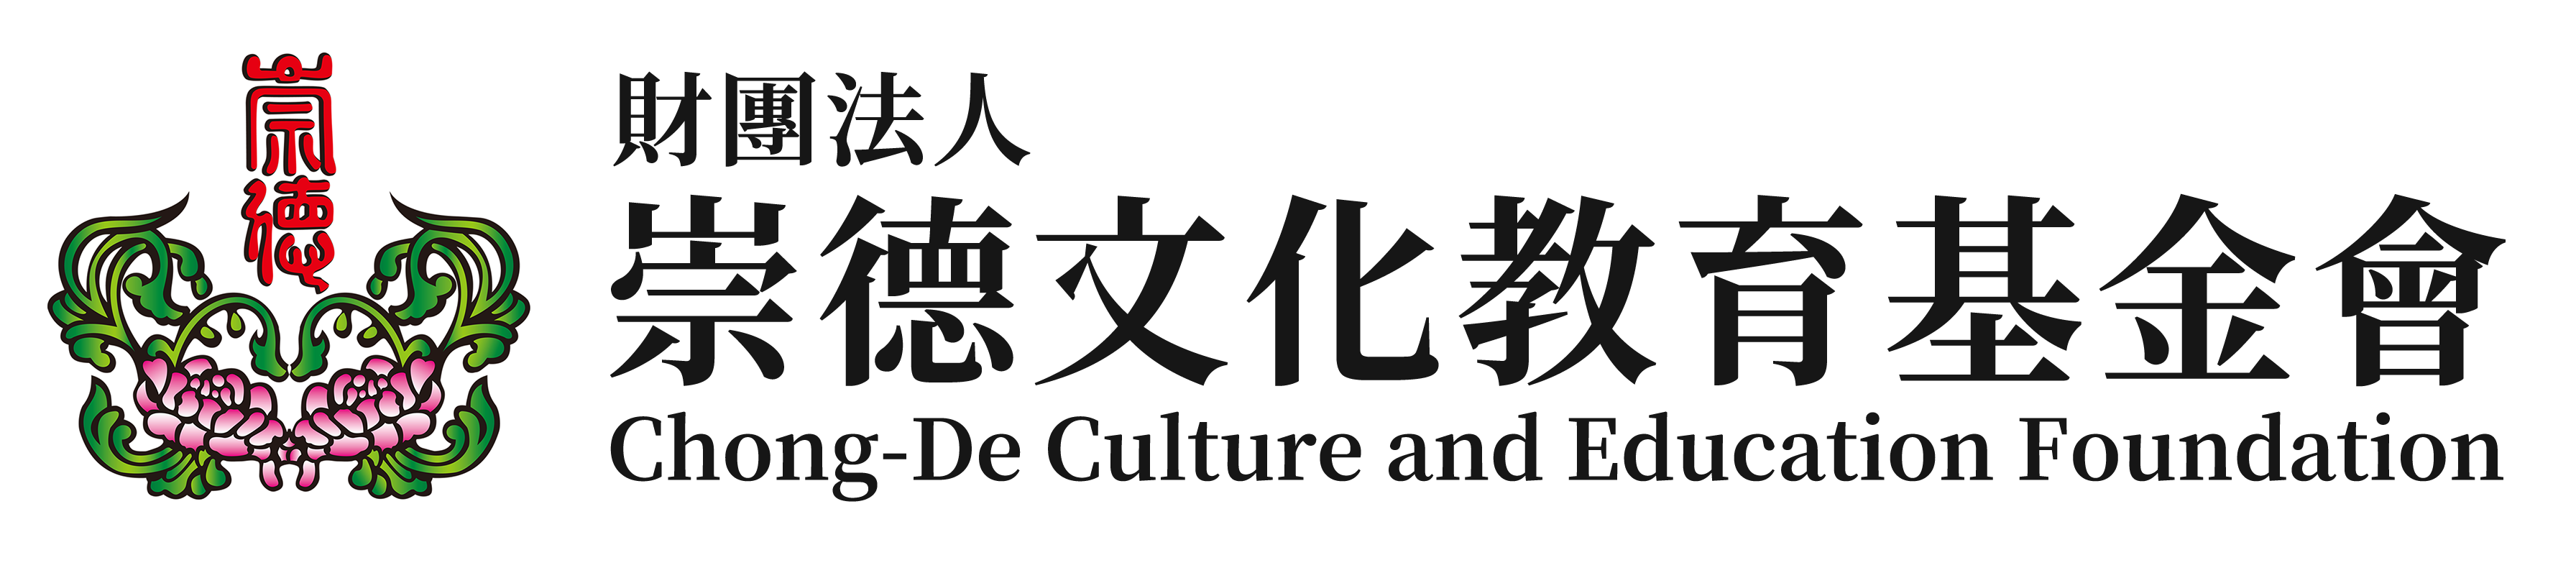 財團法人崇德文化教育基金會Chong-De Cultural and Educational Foundation